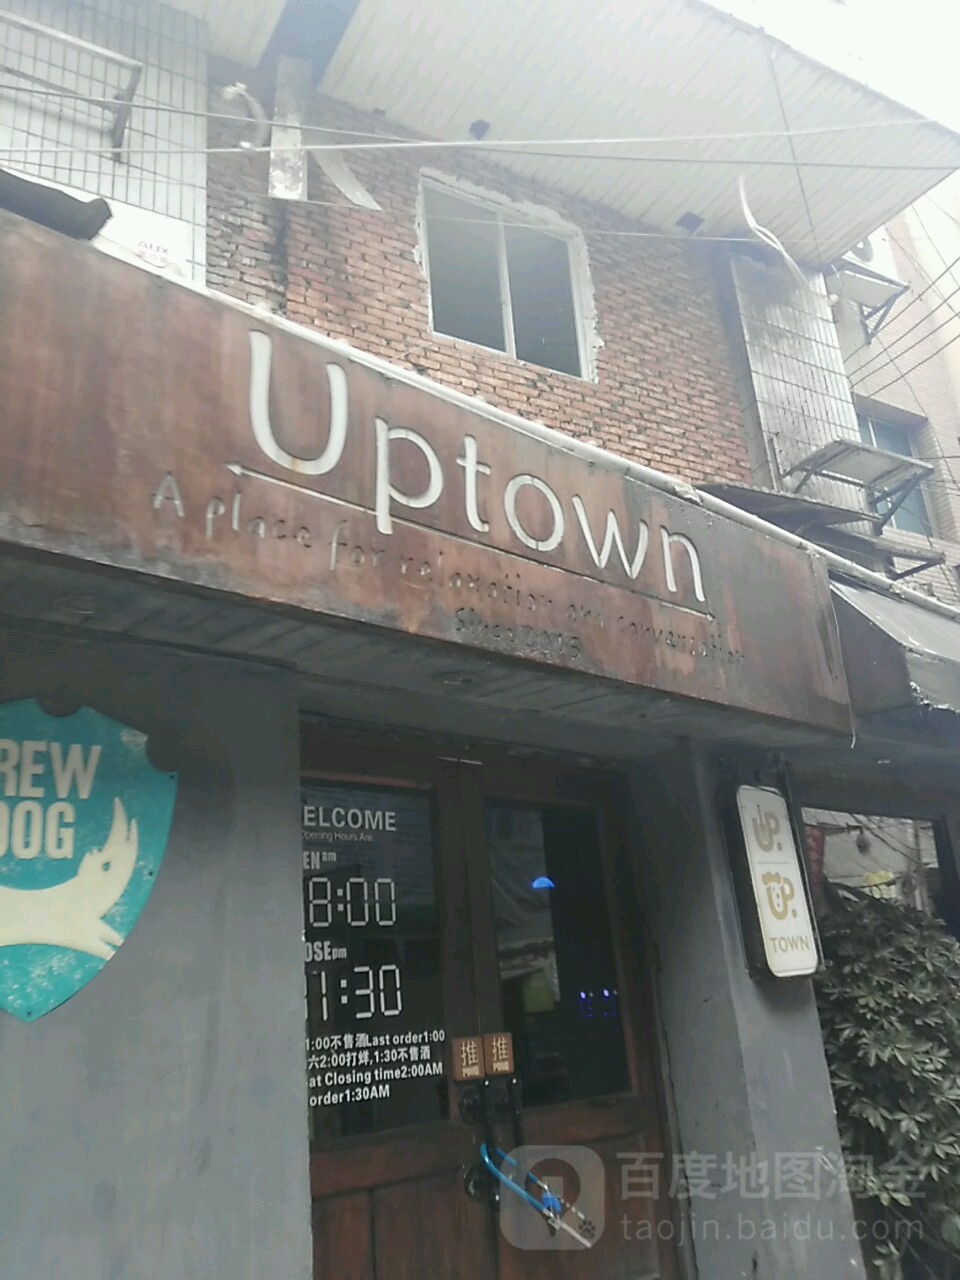 Upwotn(贵阳市副食果品商厦店)